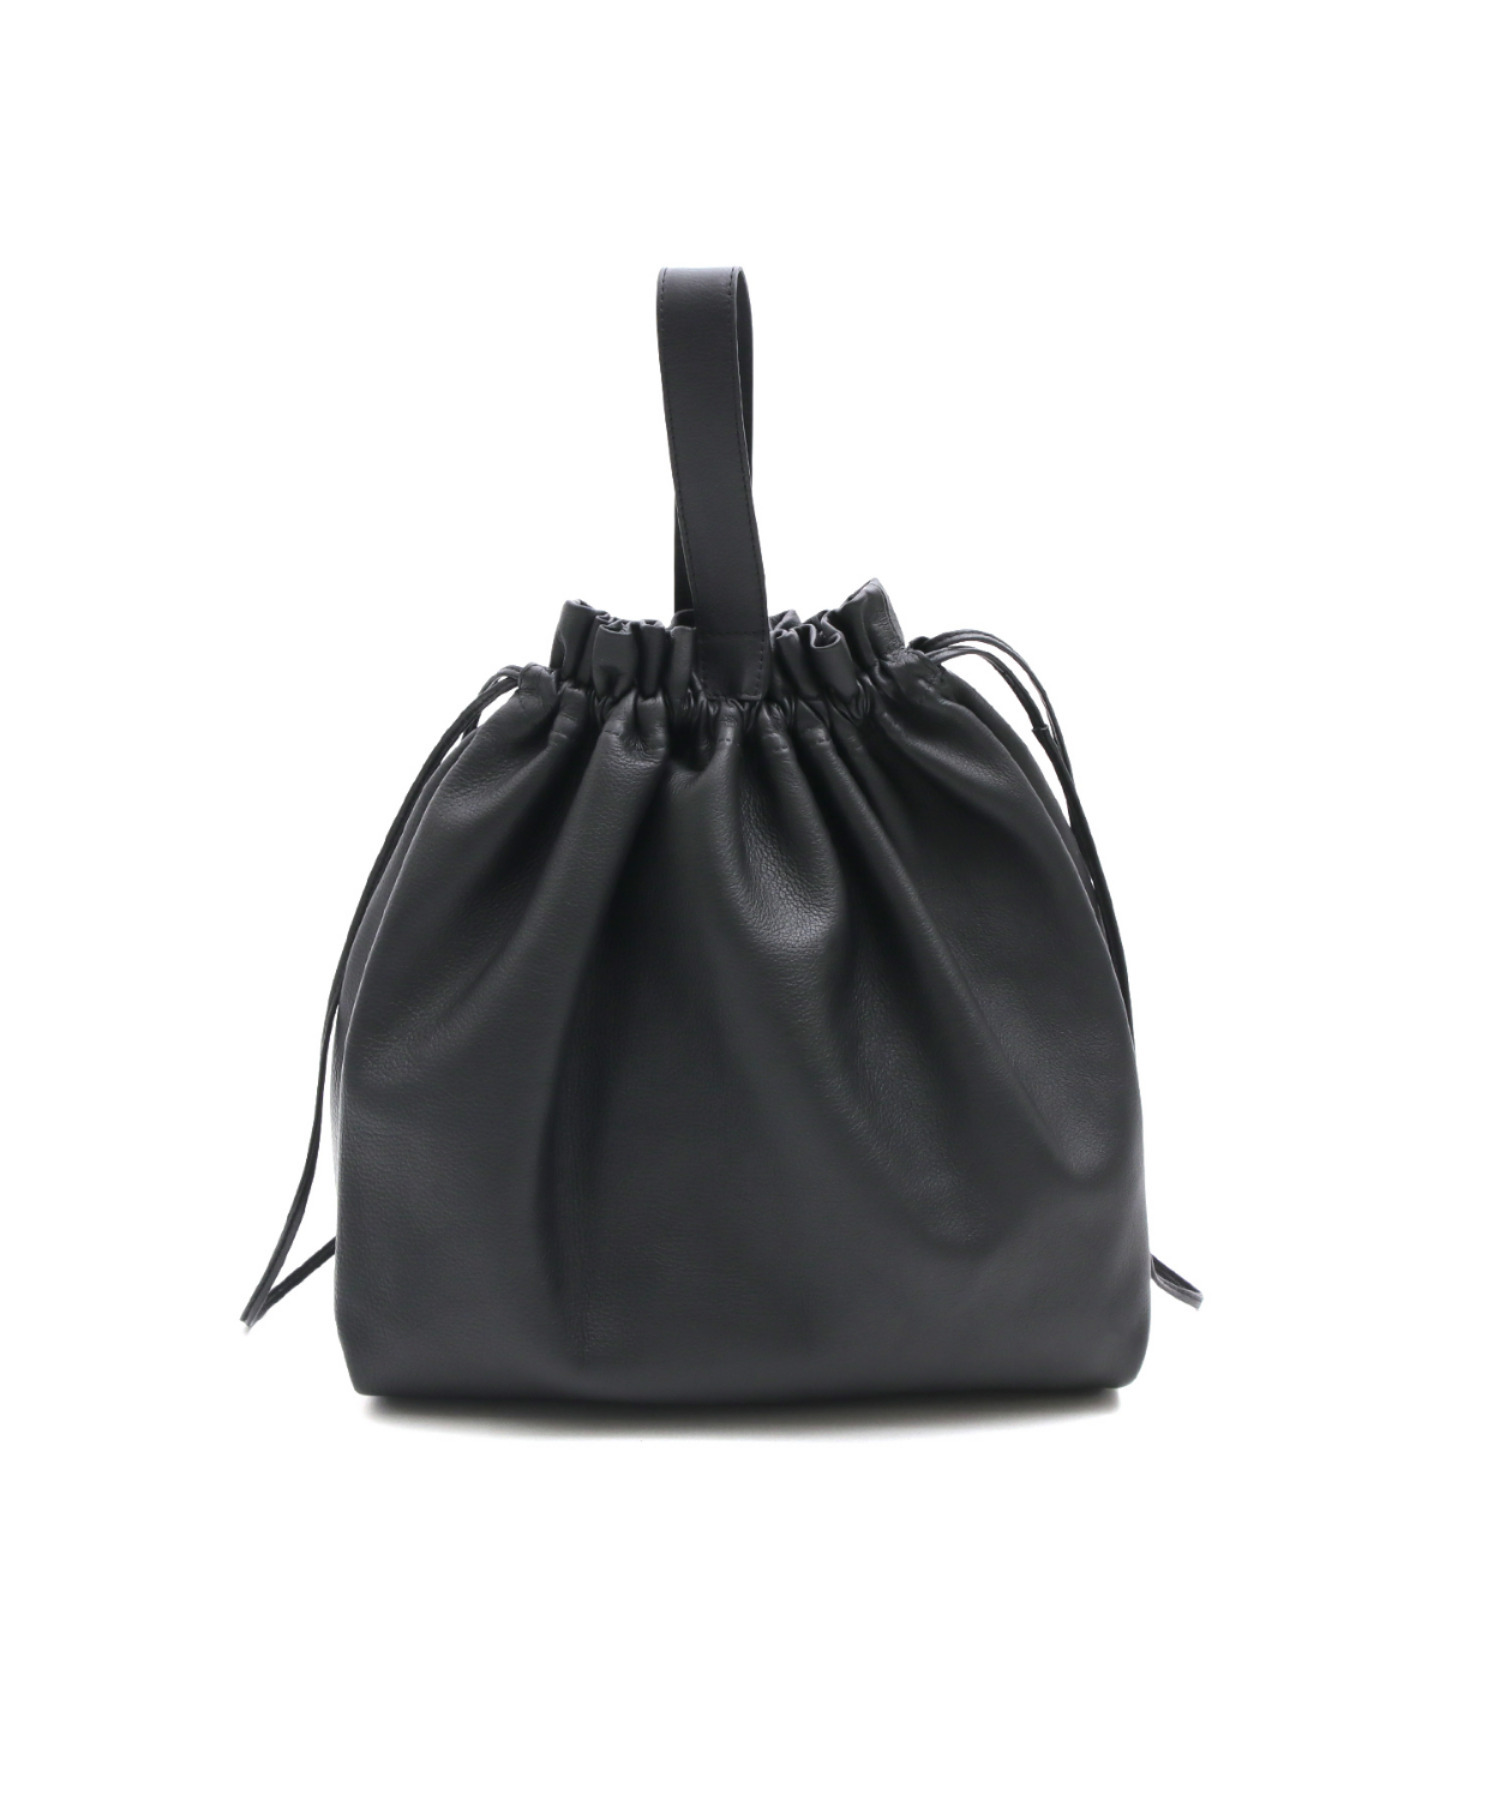 【YArKA/ヤーカ】real leather drawstring tote & hand bag [bdbd2]/リアルレザー巾着 トート バッグ